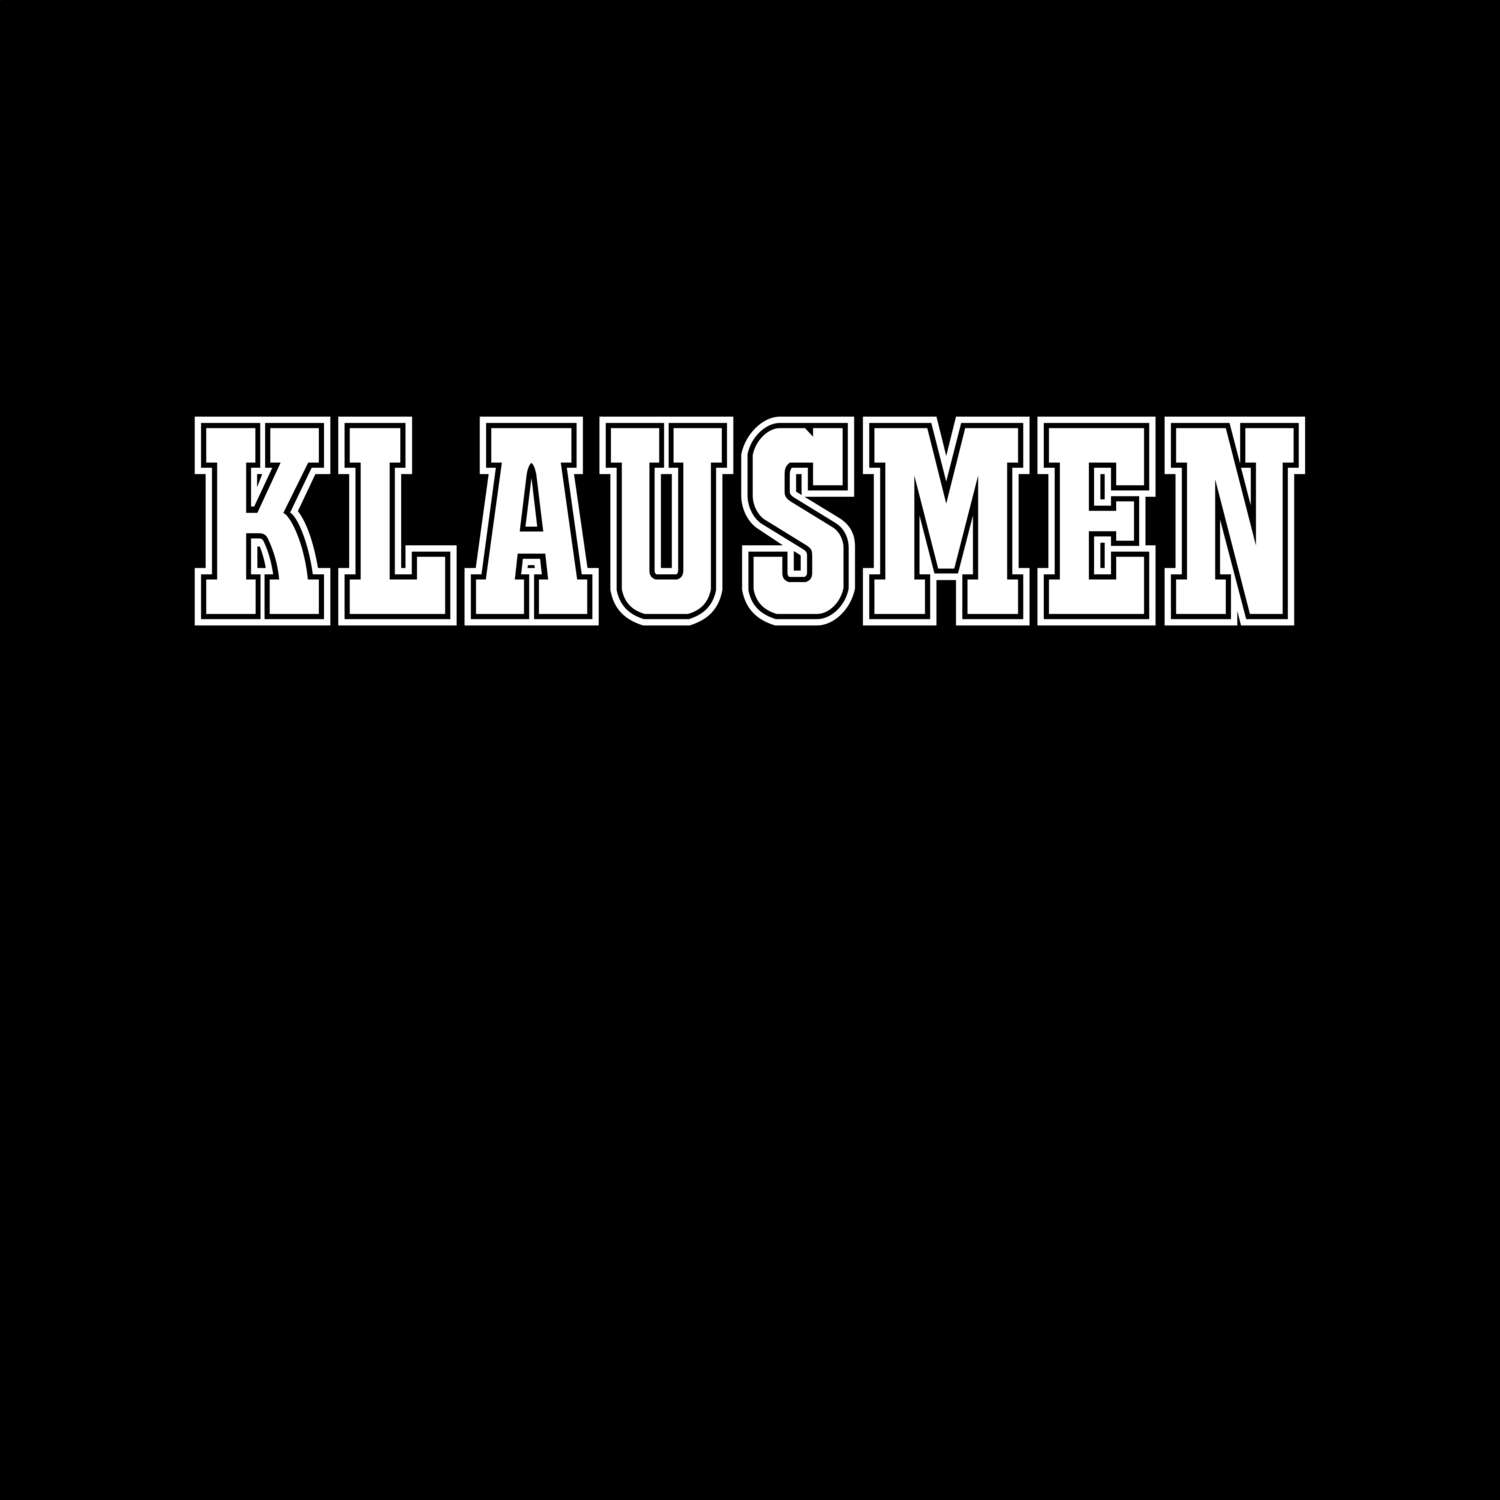 Klausmen T-Shirt »Classic«